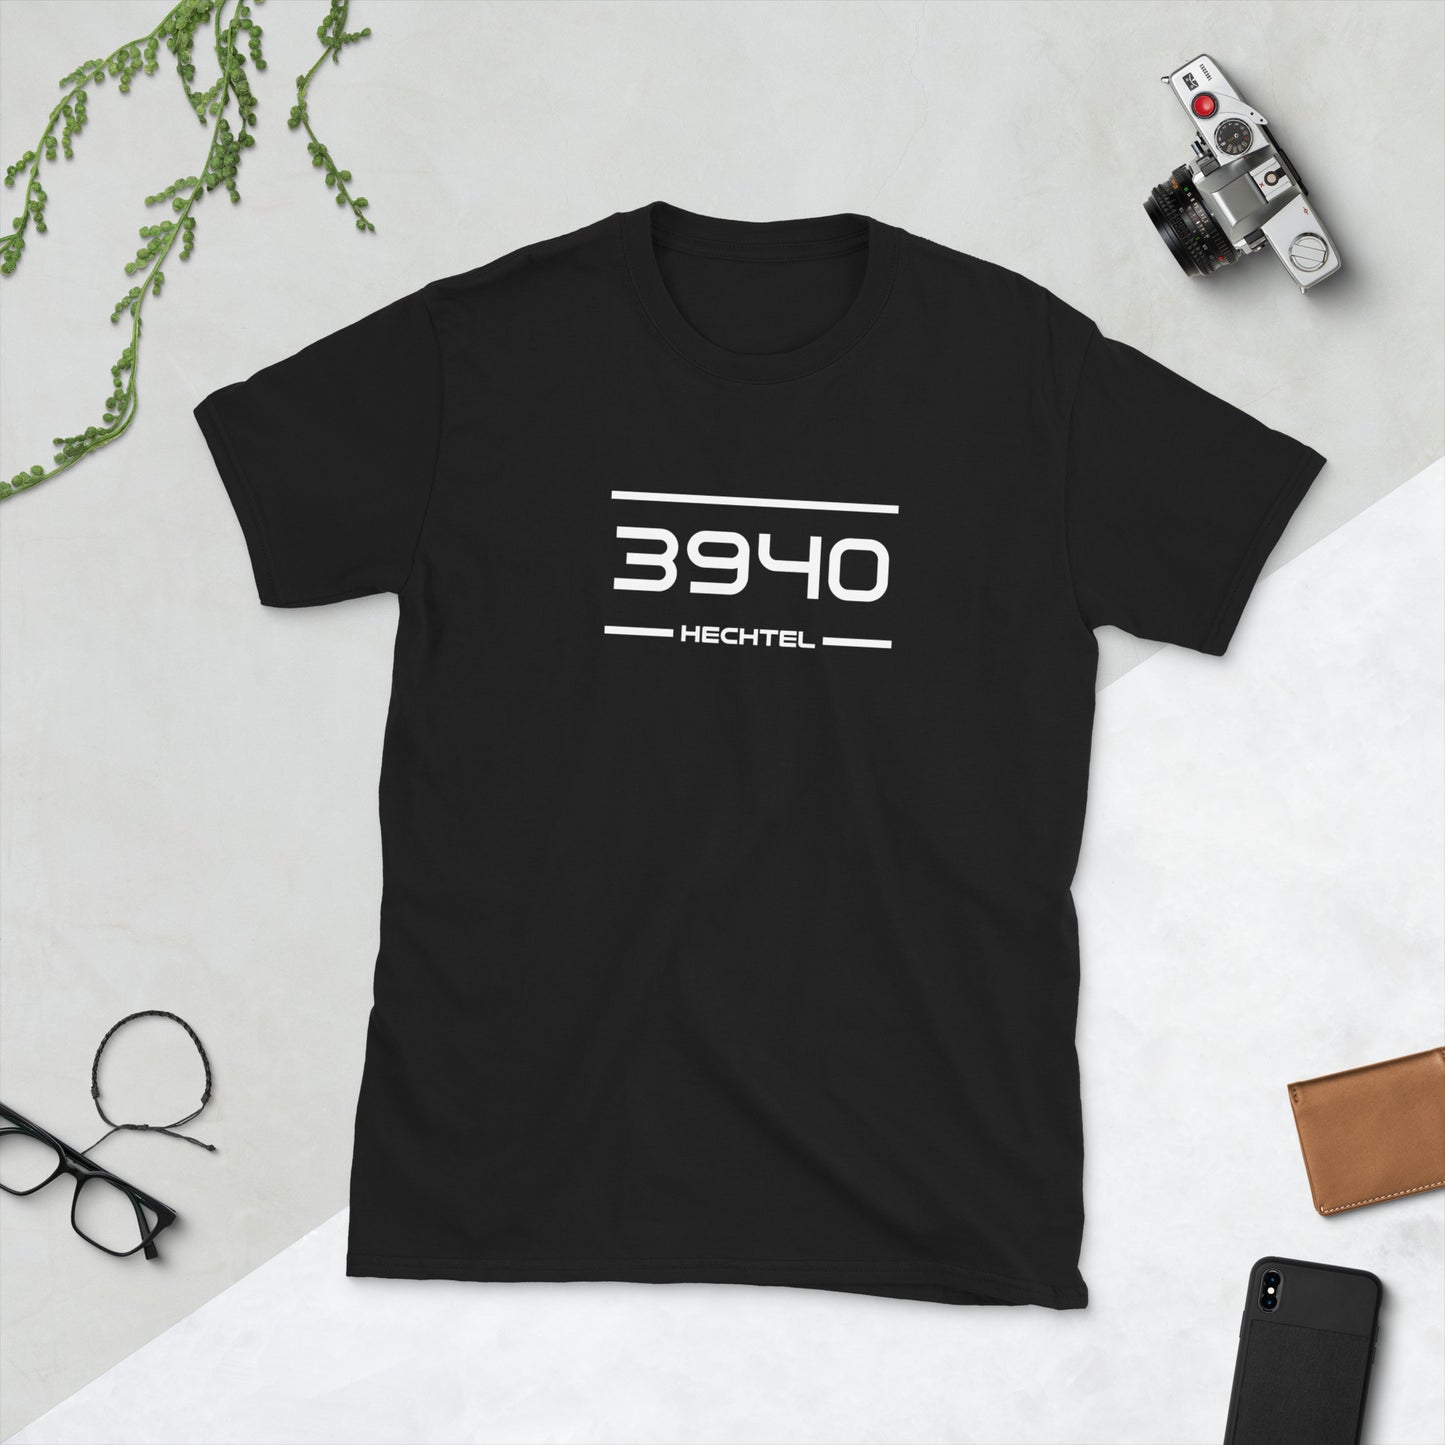 Tshirt - 3940 - Hechtel